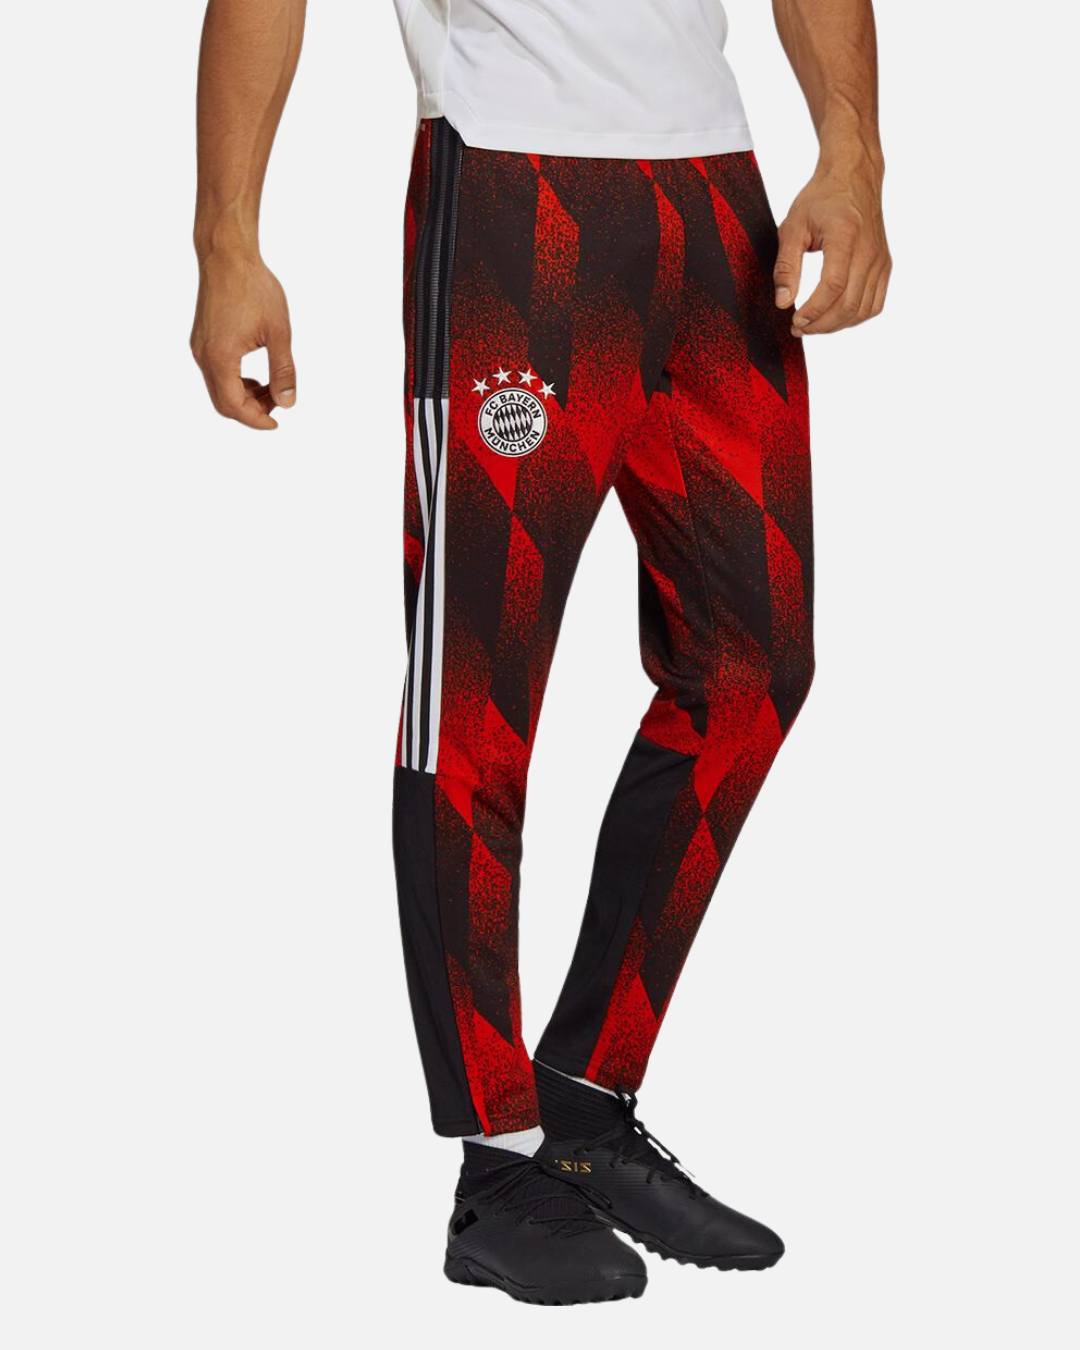 Bayern Munich 2021 training pants - Red/Black